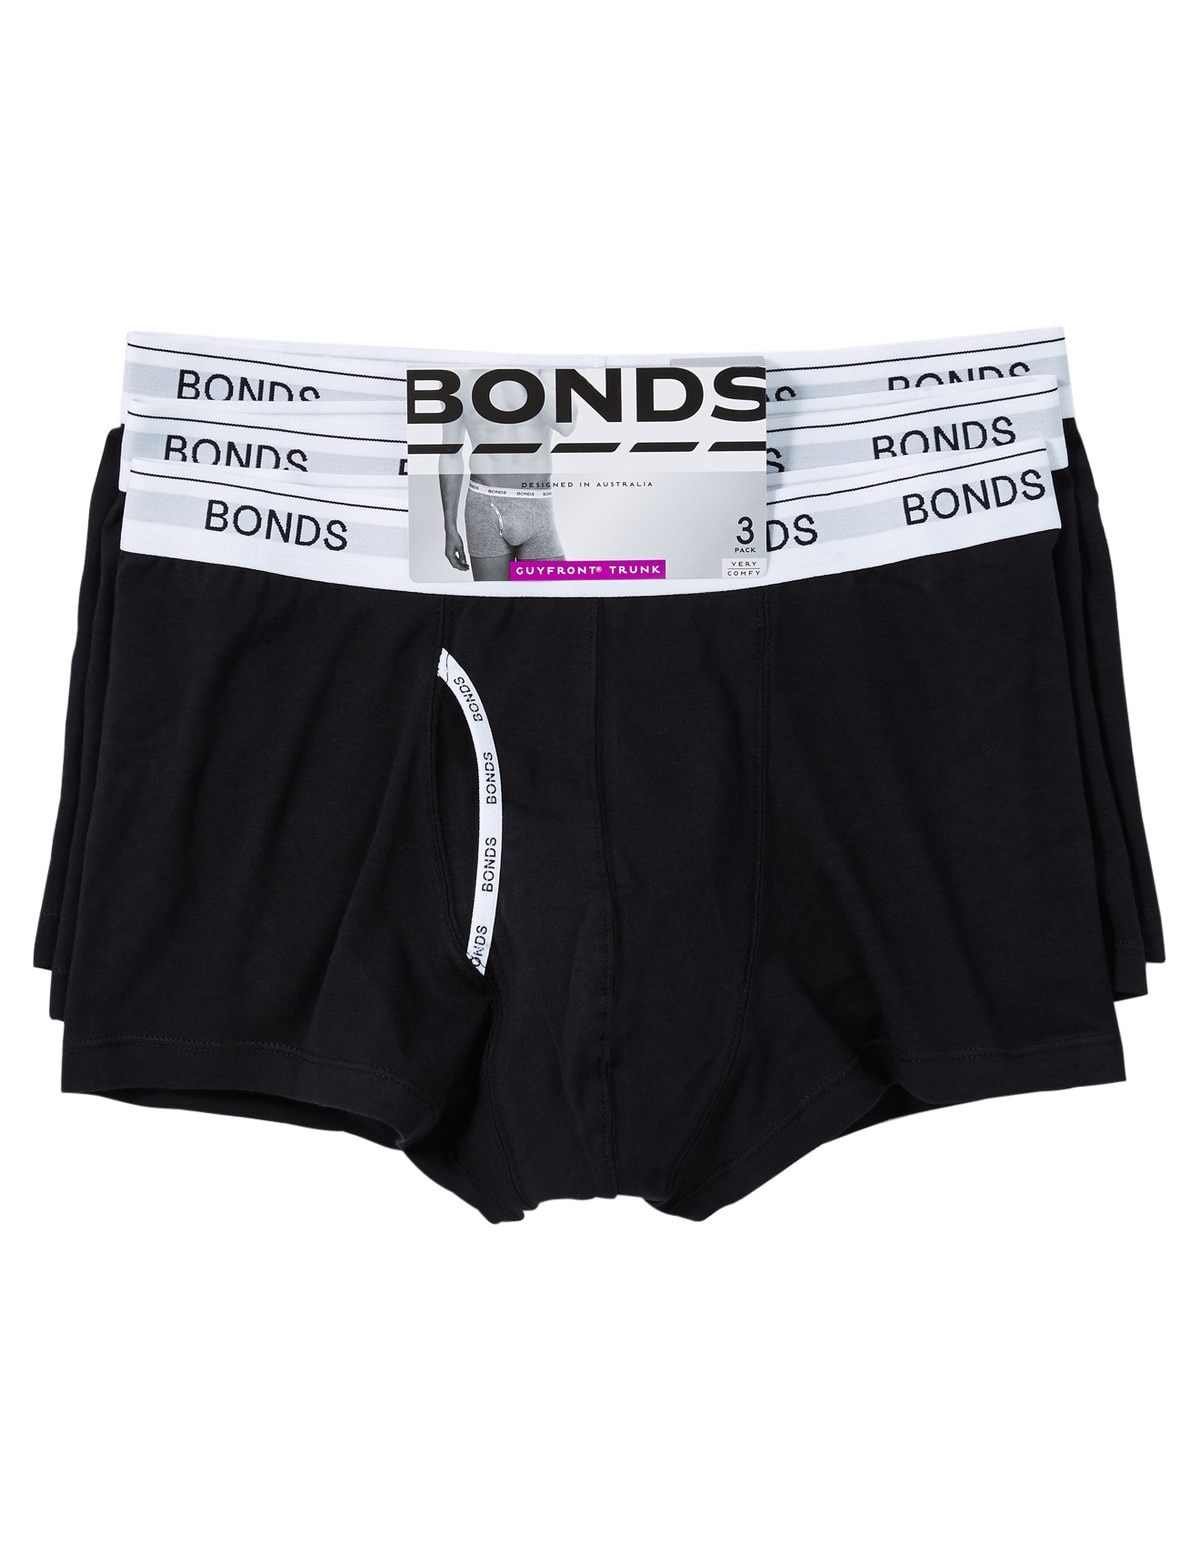 NZSALE  Bonds 6 X Bonds Guyfront Trunks Mens Underwear Undies